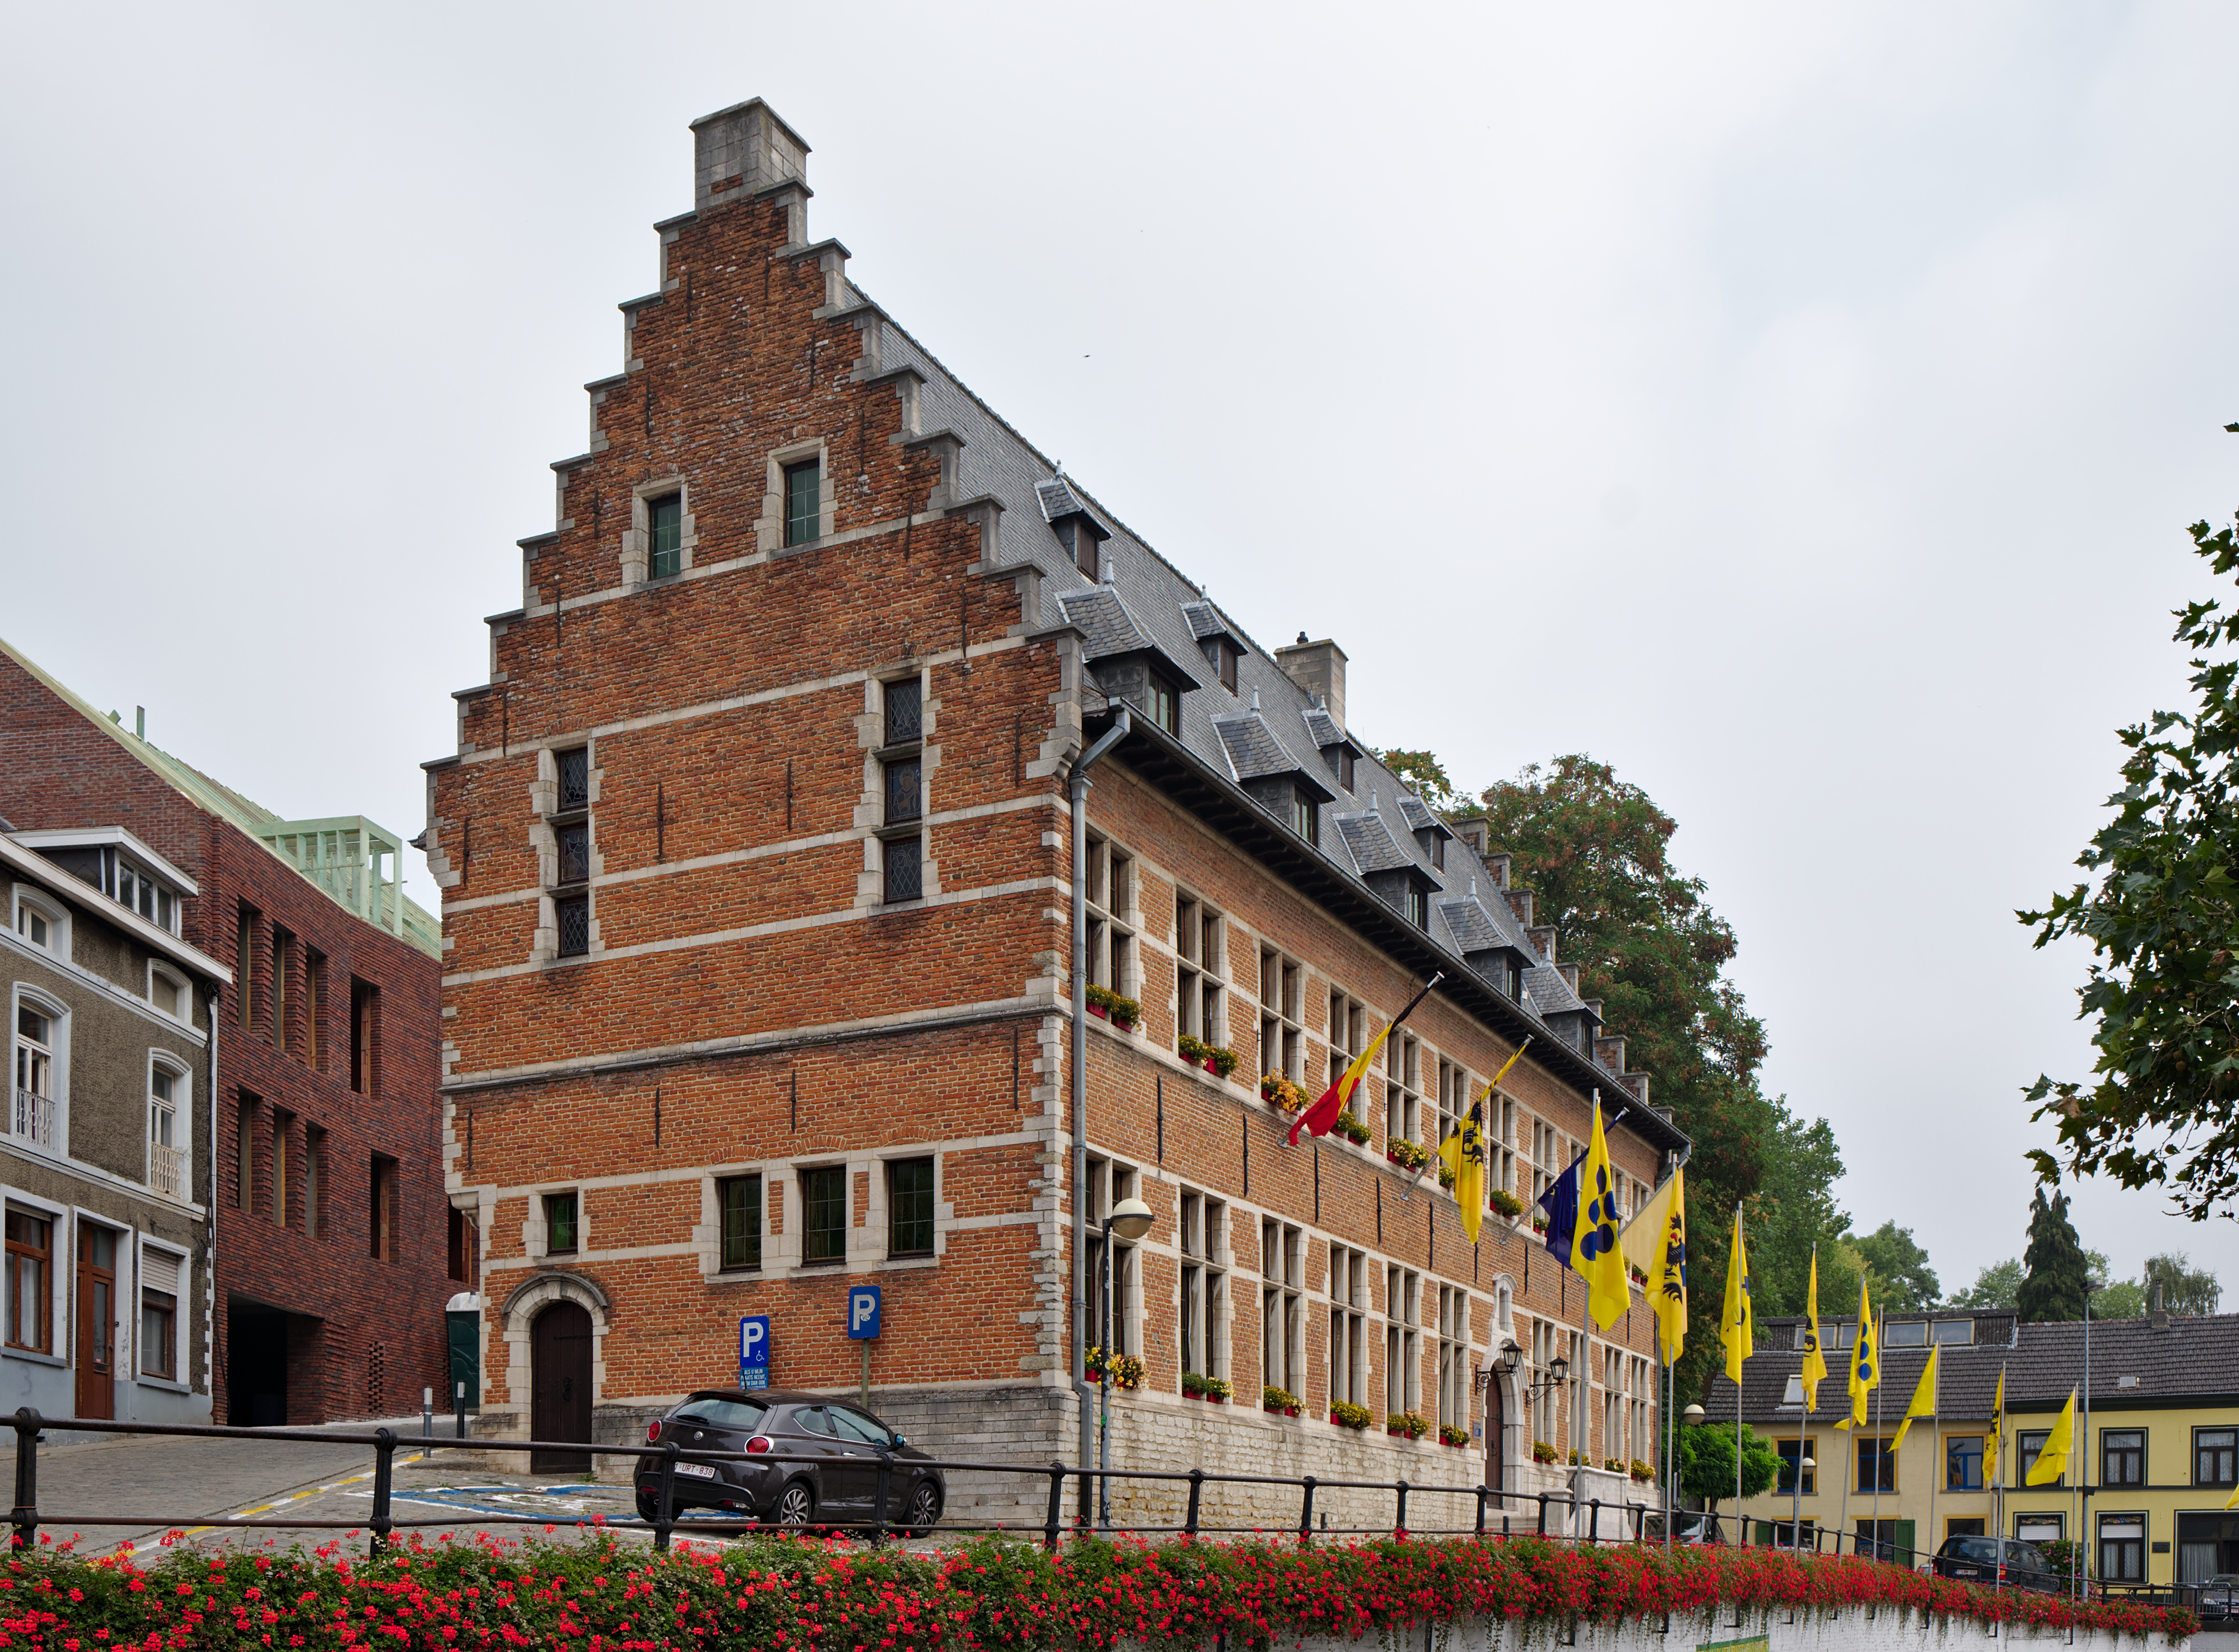 Former town hall of Overijse, Belgium (DSCF7525)